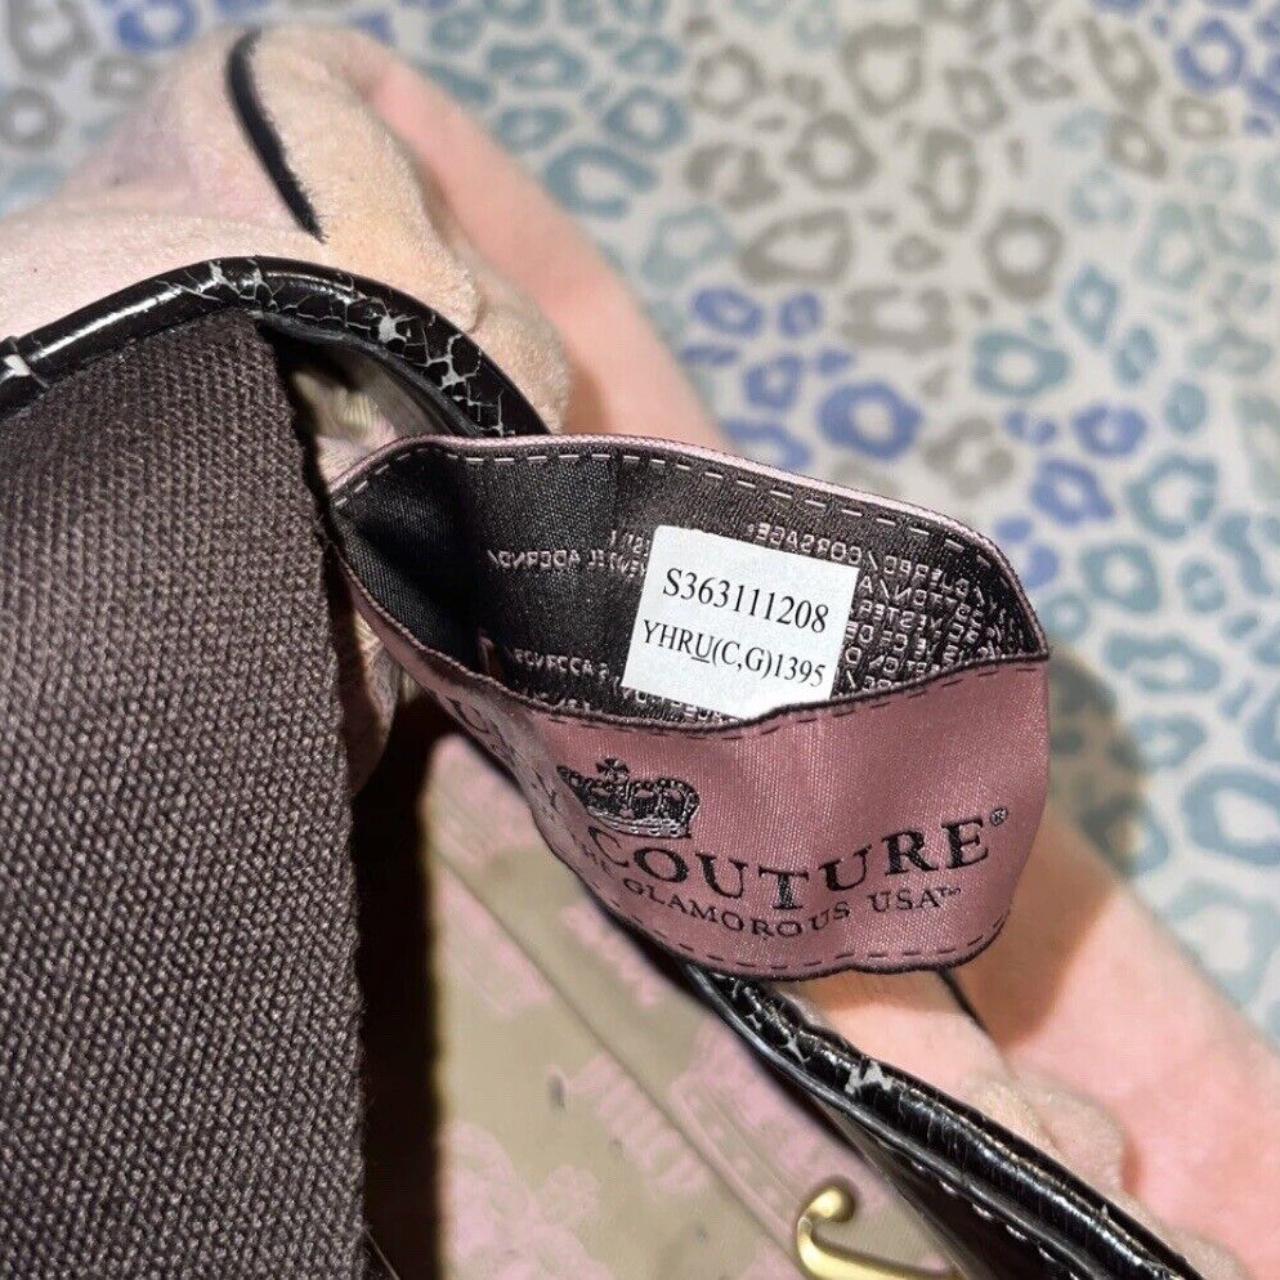 Vintage Rare Pink Juicy Couture Purse Handbag Bag -... - Depop